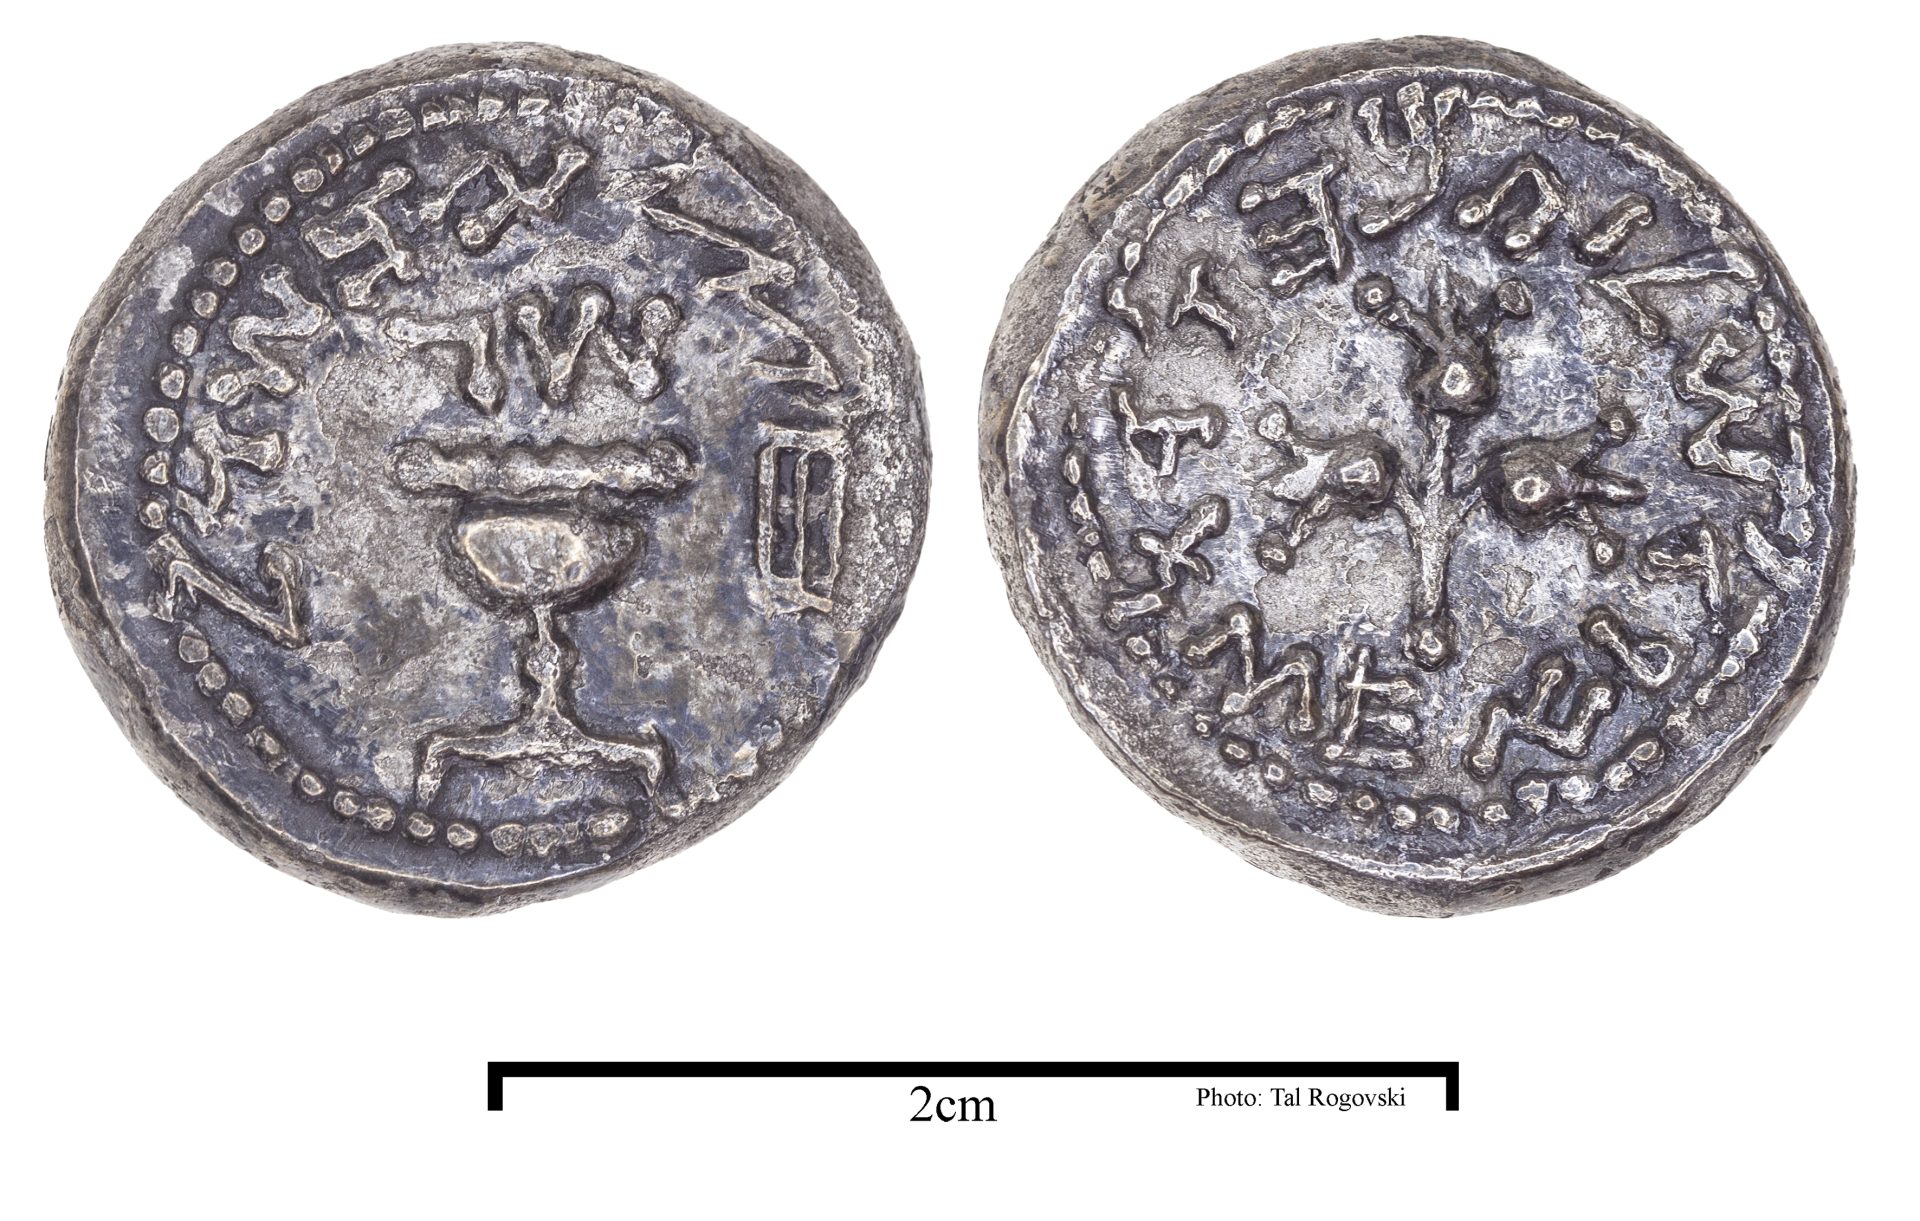 נדיר במיוחד: מטבע של חצי שקל מימי המרד הגדול התגלה בחפירות העופל בירושלים